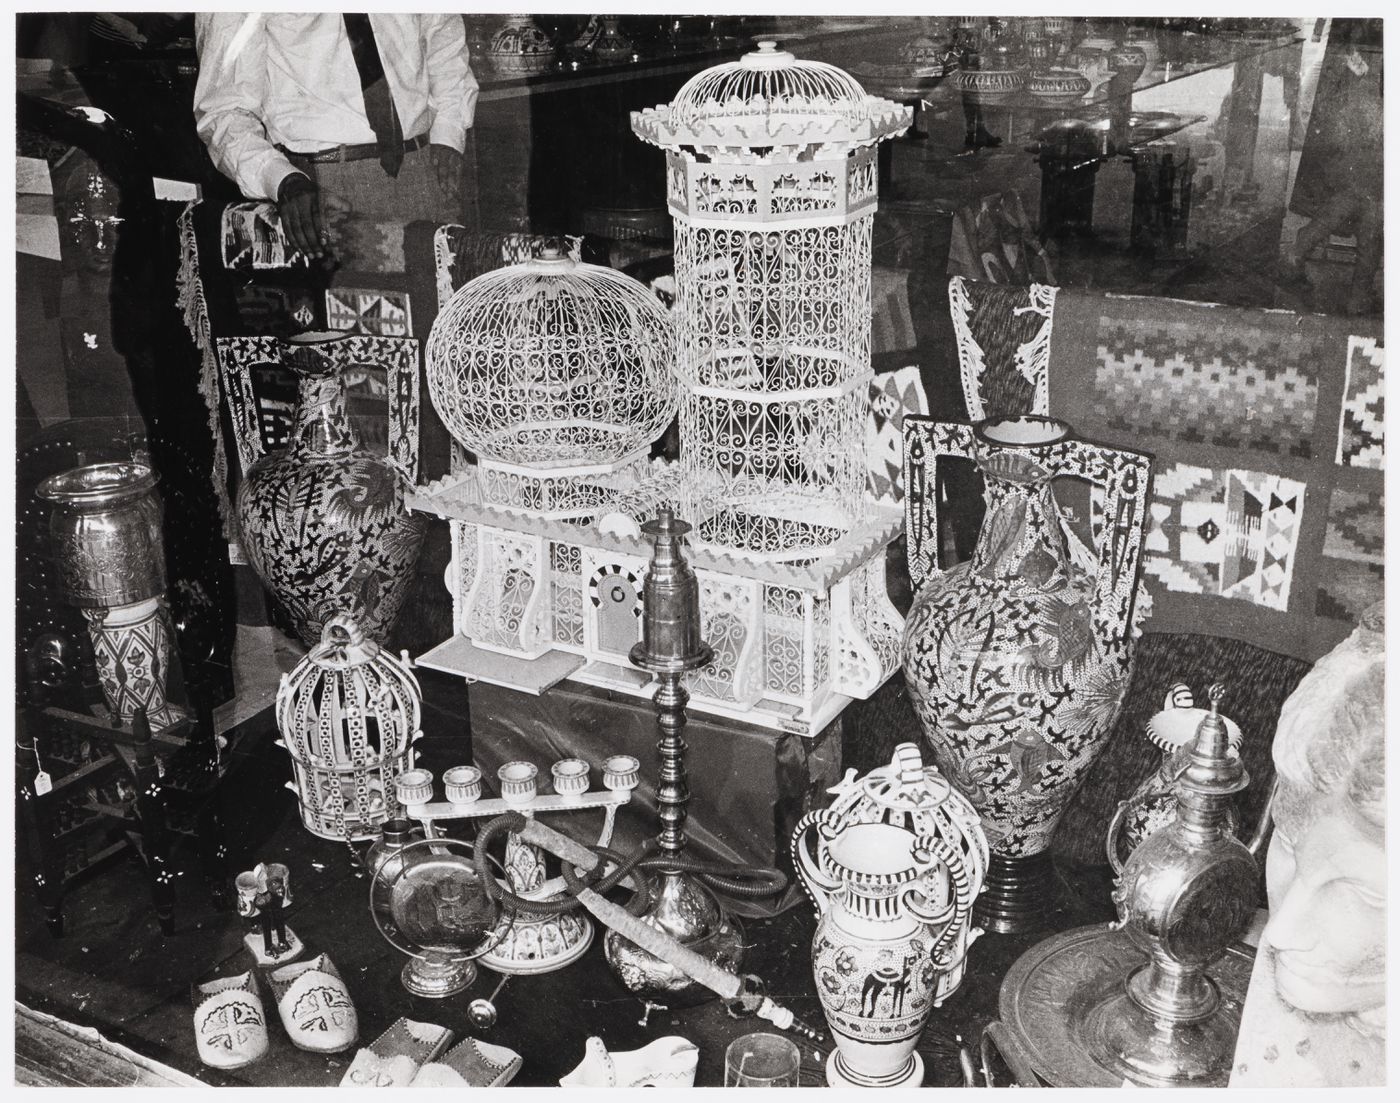 View of items for sale, Expo 67, Montréal, Québec